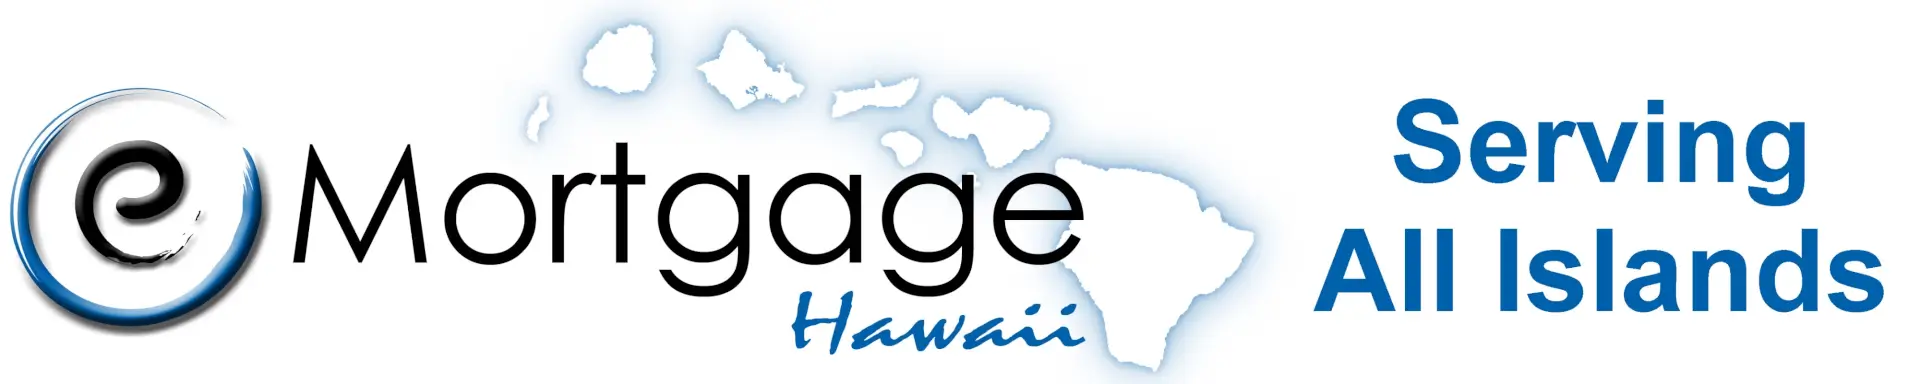 eMortgage Hawaii